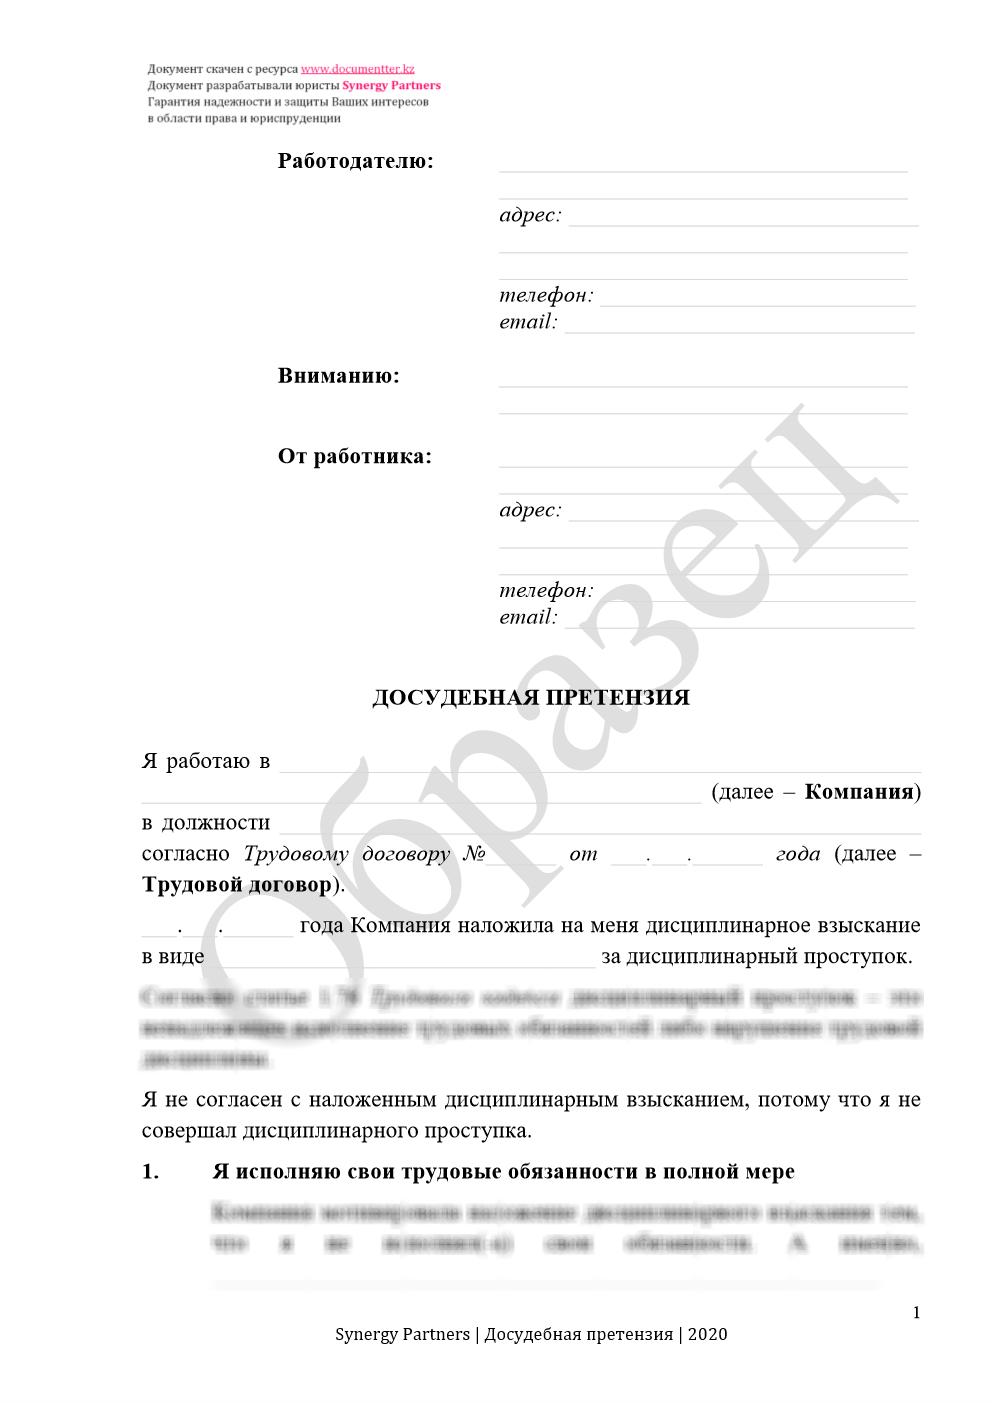 Досудебная претензия, если незаконно наложили дисциплинарное взыскание | documentterkz.com в Казахстане